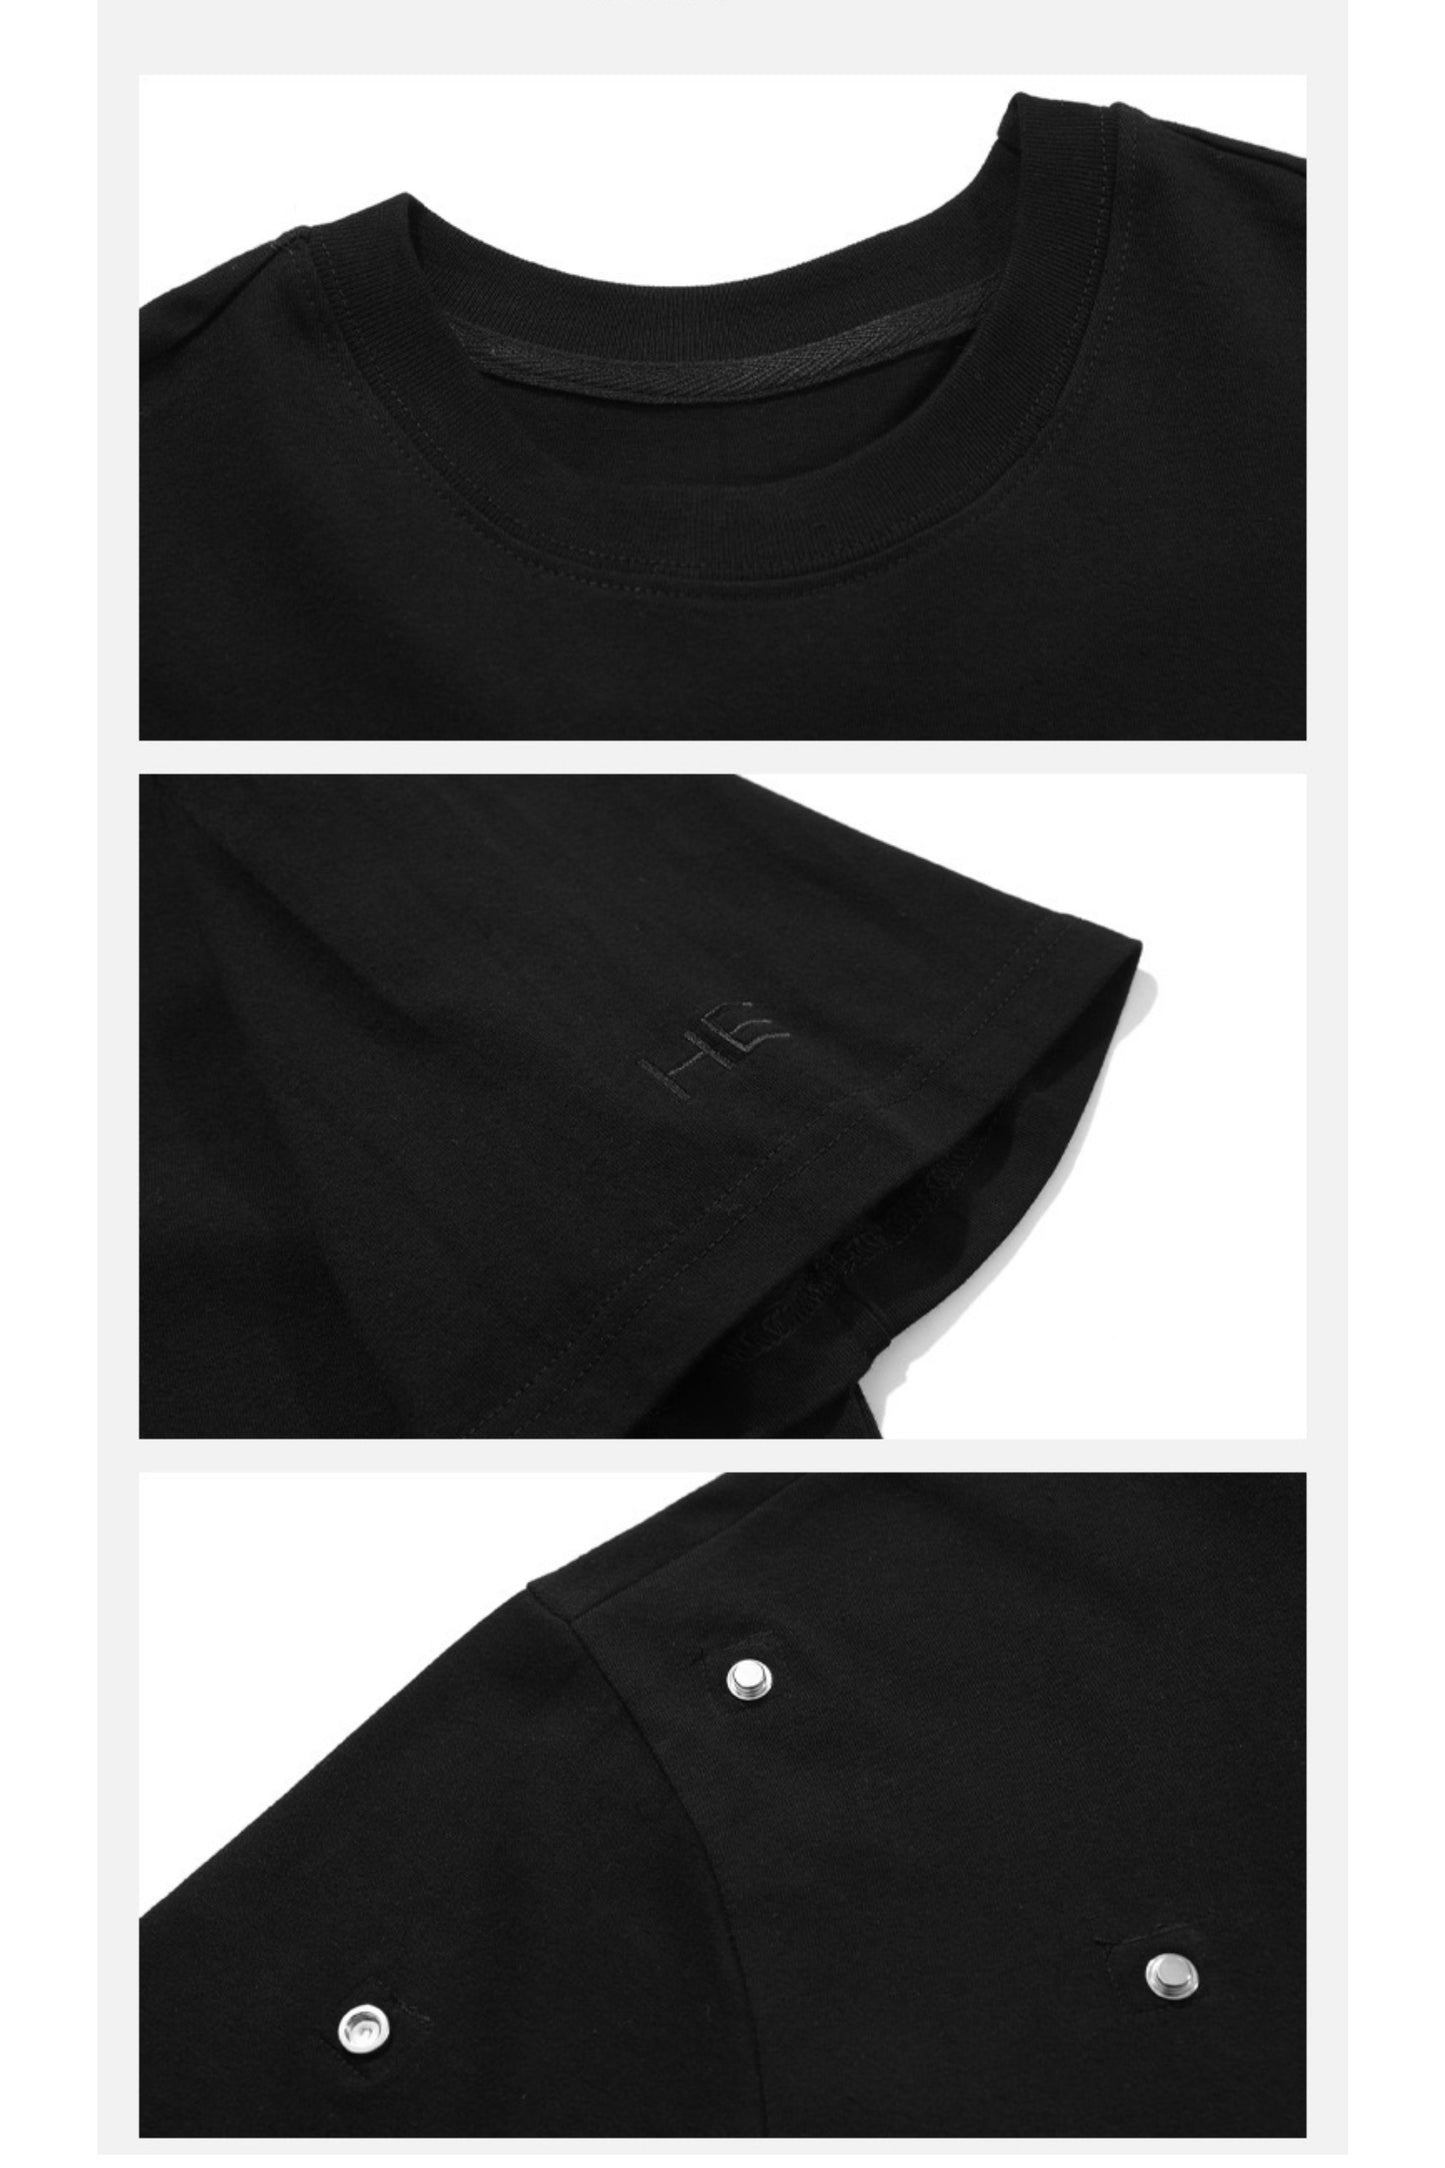 UNISEX Avant Garde Button Design T-shirt | ARGUE CULTURE Collection [H190]